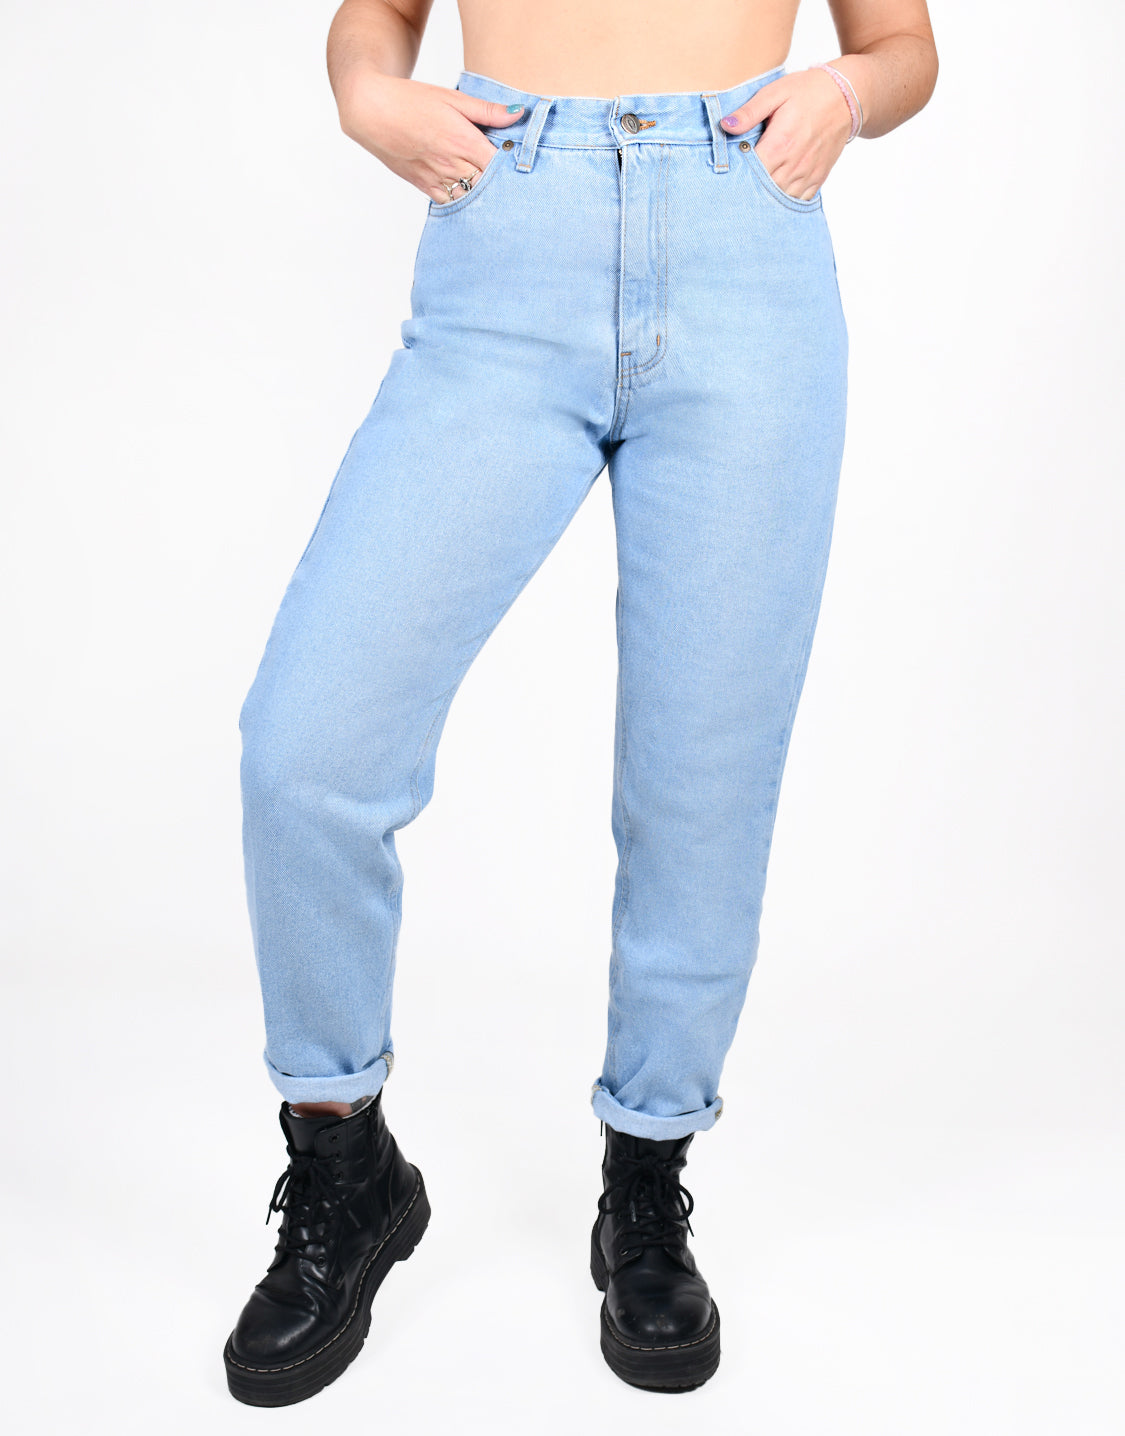 Viperinas Online Store | Jeans Early 90s  | Composición:  Composición: 100% algodón Material Sostenible  | Envíos a todo el mundo | Marca de Ropa canaria | Moda Mujer | Jeans Viperinas